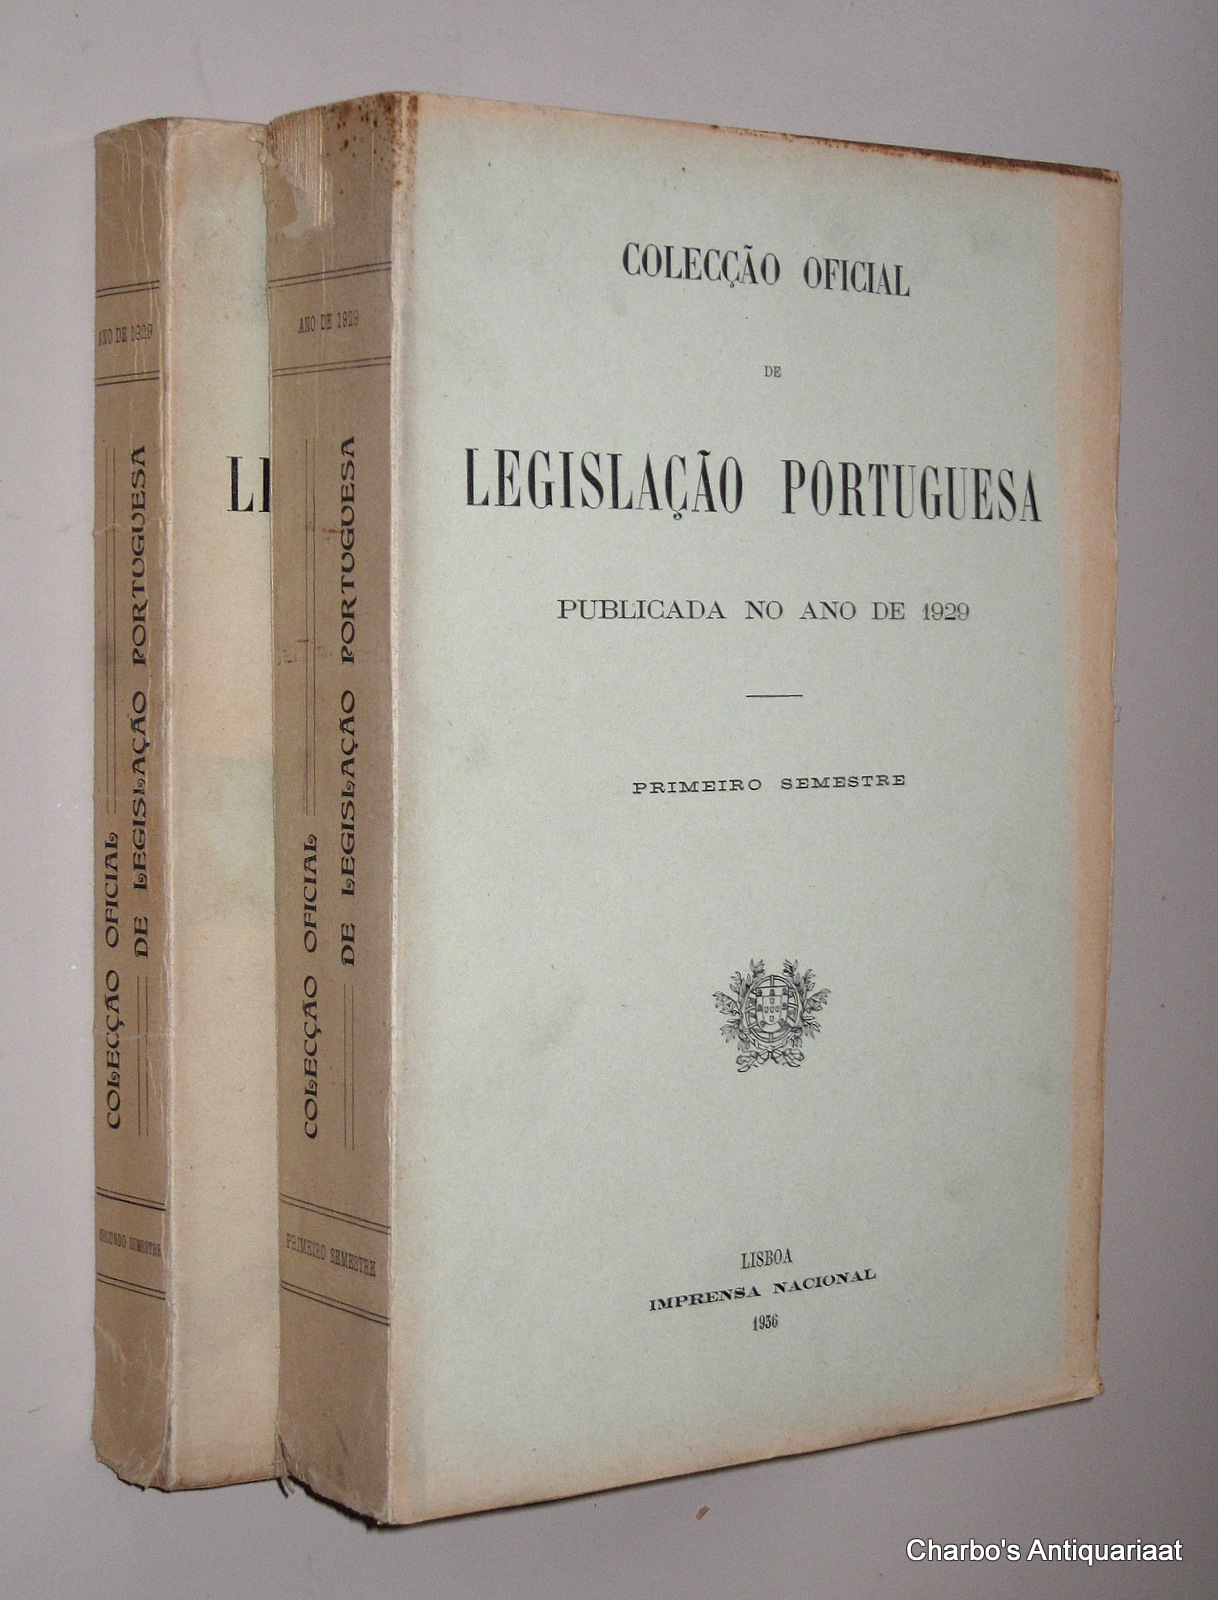 N/A, -  Coleco oficial de legislao portuguesa, publicada no ano de 1929. Primeiro & segundo semestre.